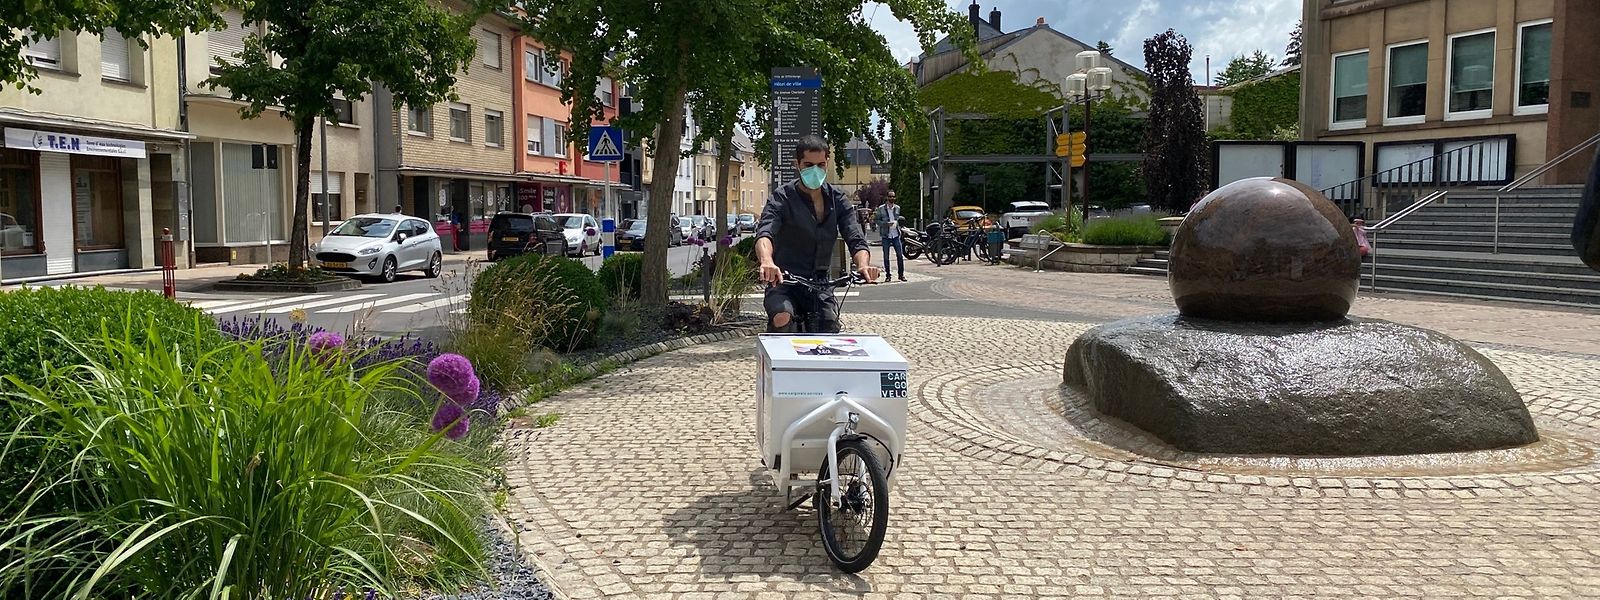 Mit elektrischen Lastenfahrrädern werden während einer Woche Jutebeutel für die Kampagne „Ech kafe lokal“ ausgefahren.